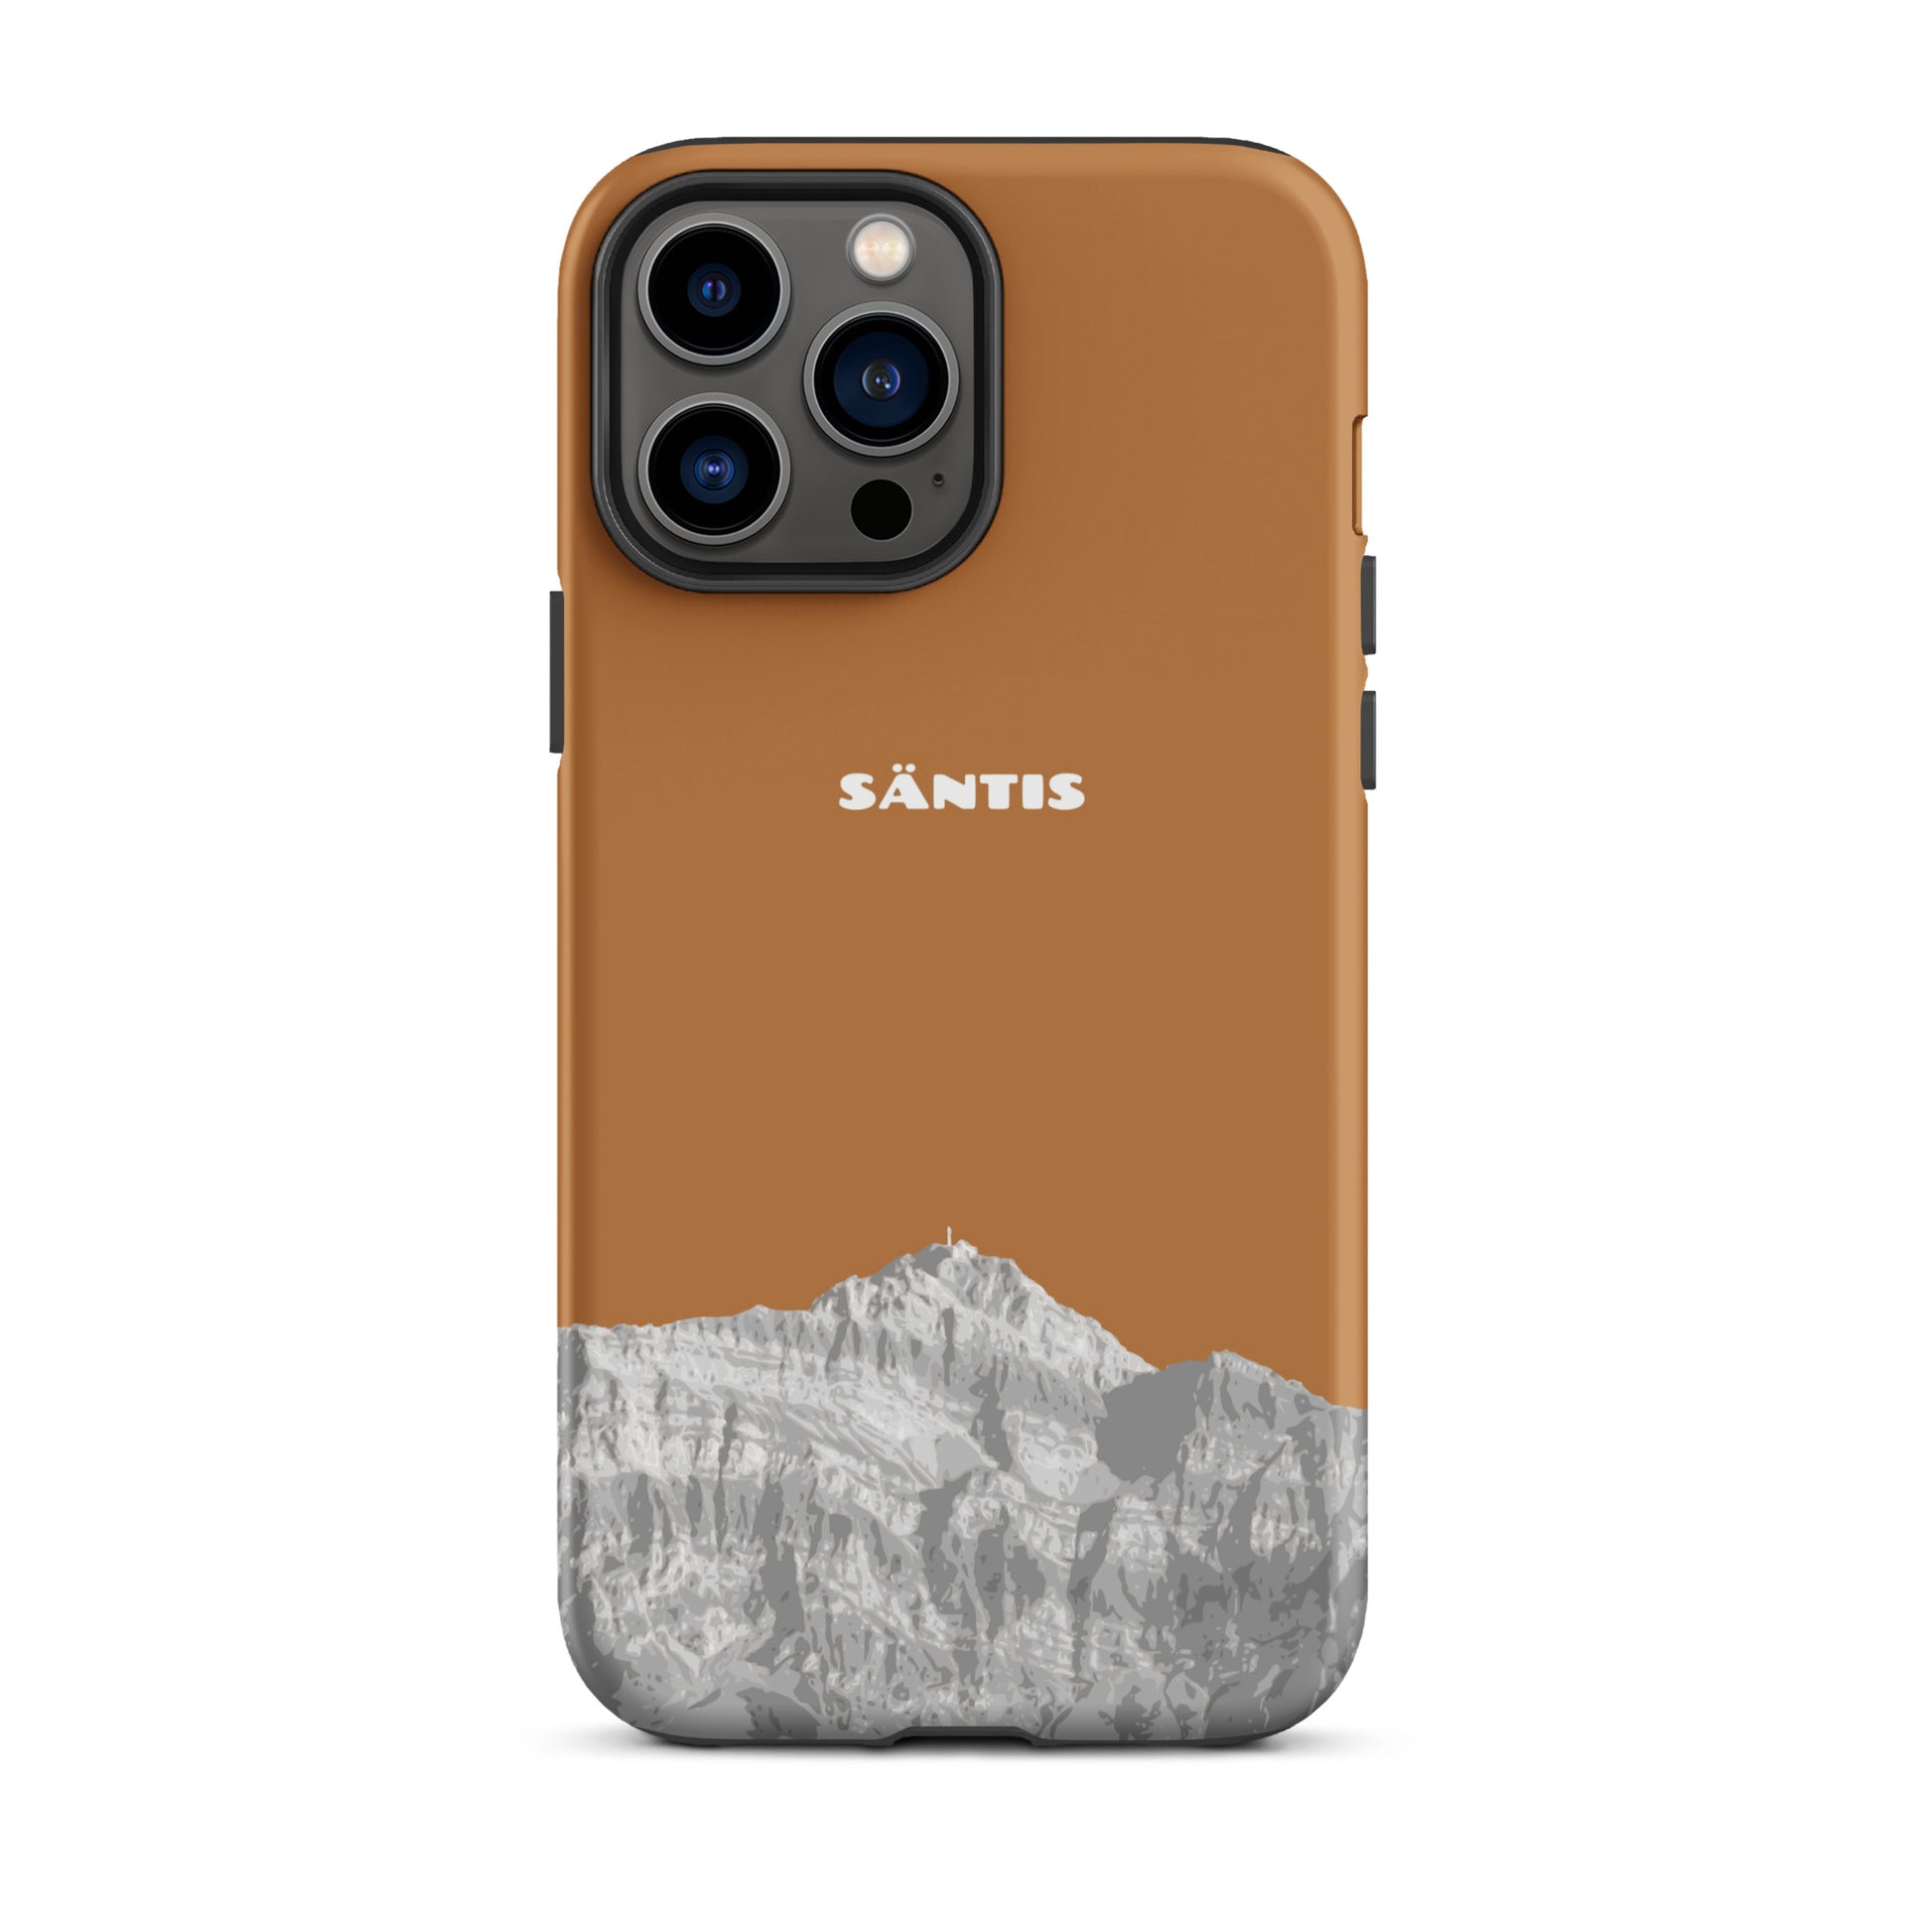 Hülle für das iPhone 13 Pro Max von Apple in der Farbe Kupfer, dass den Säntis im Alpstein zeigt.